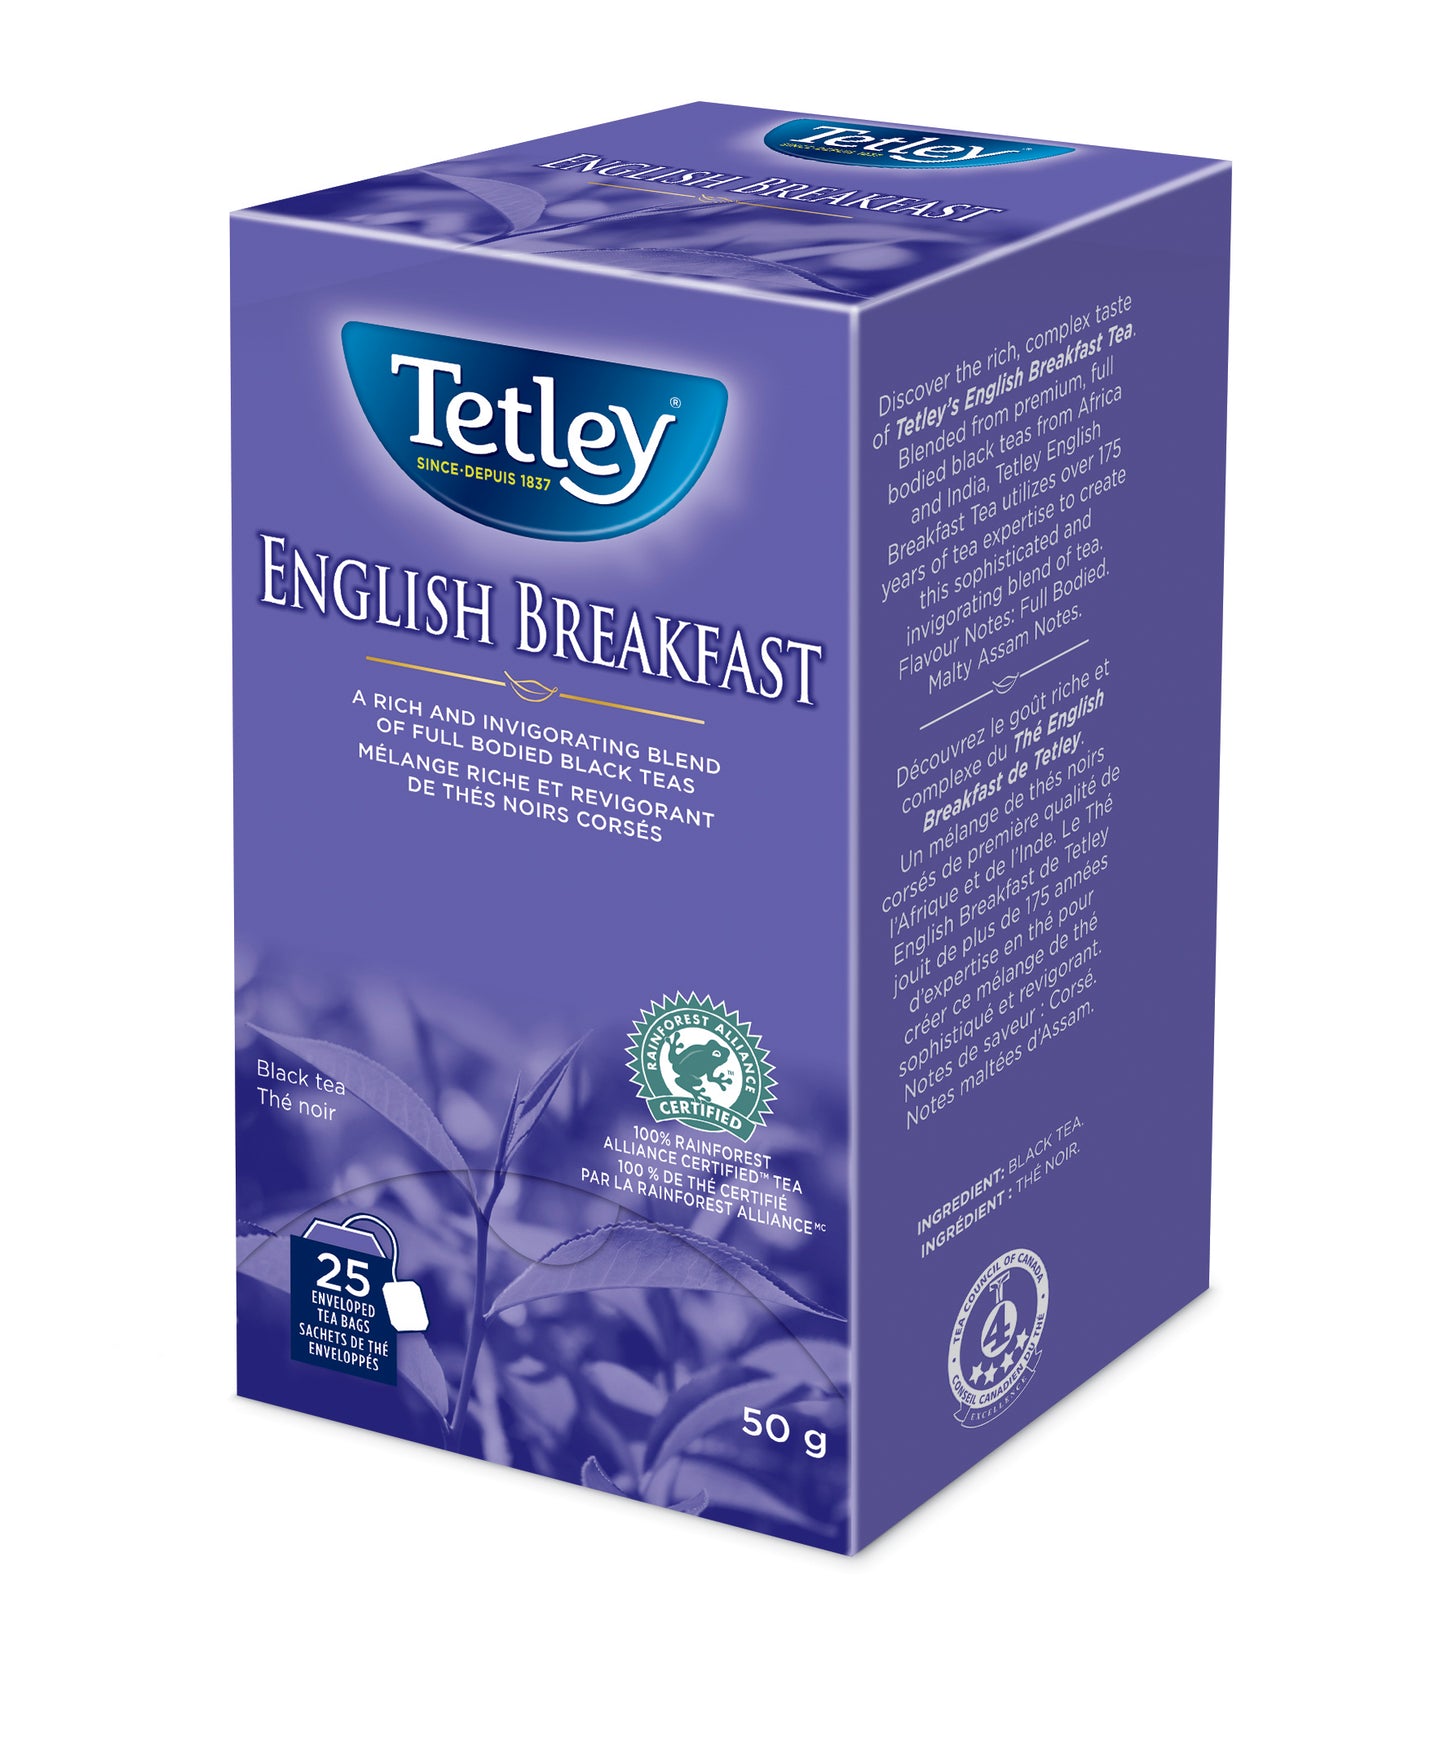 ENGLISH BREAKFAST TEA box by Tetley